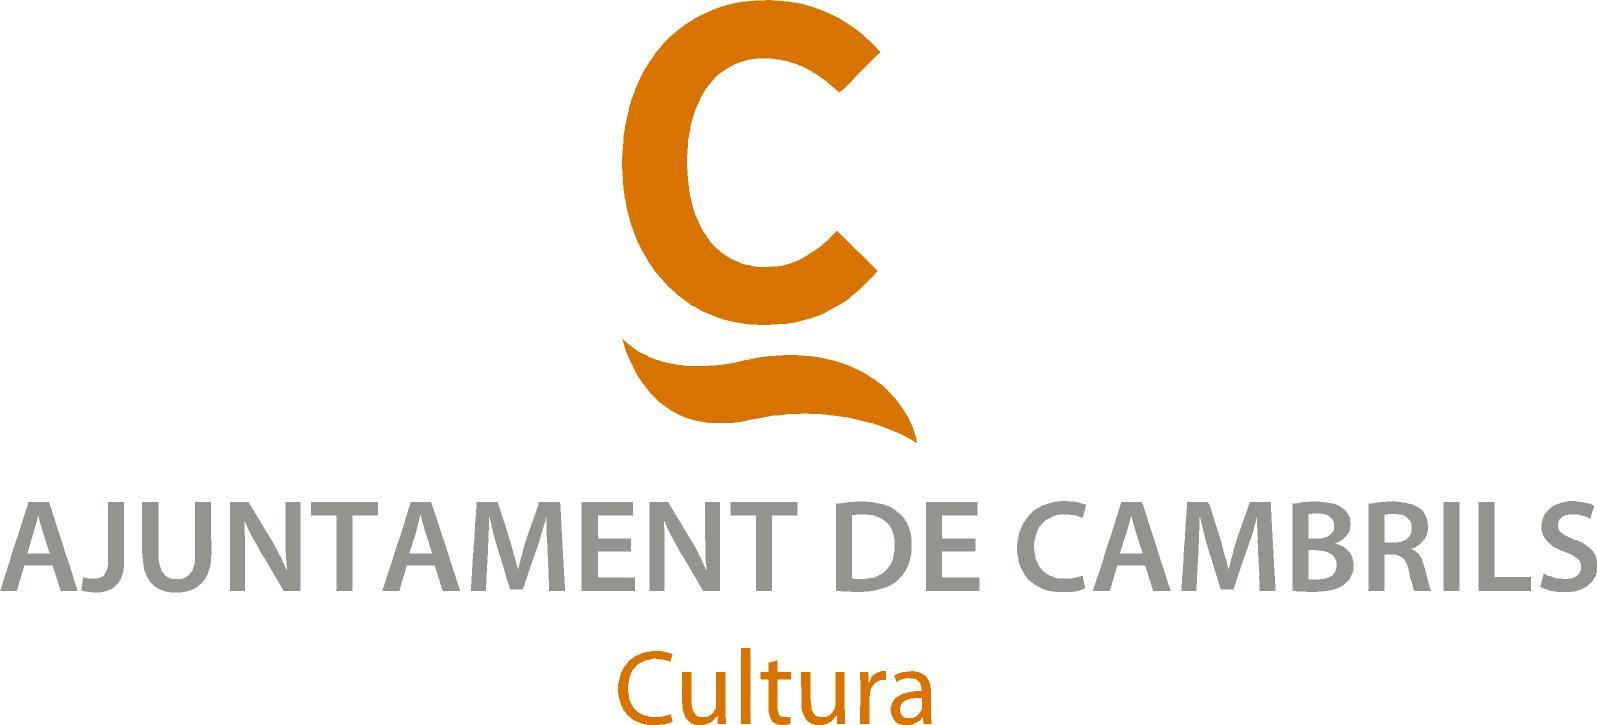 Dep. Cultura - Ajuntament de Cambrils